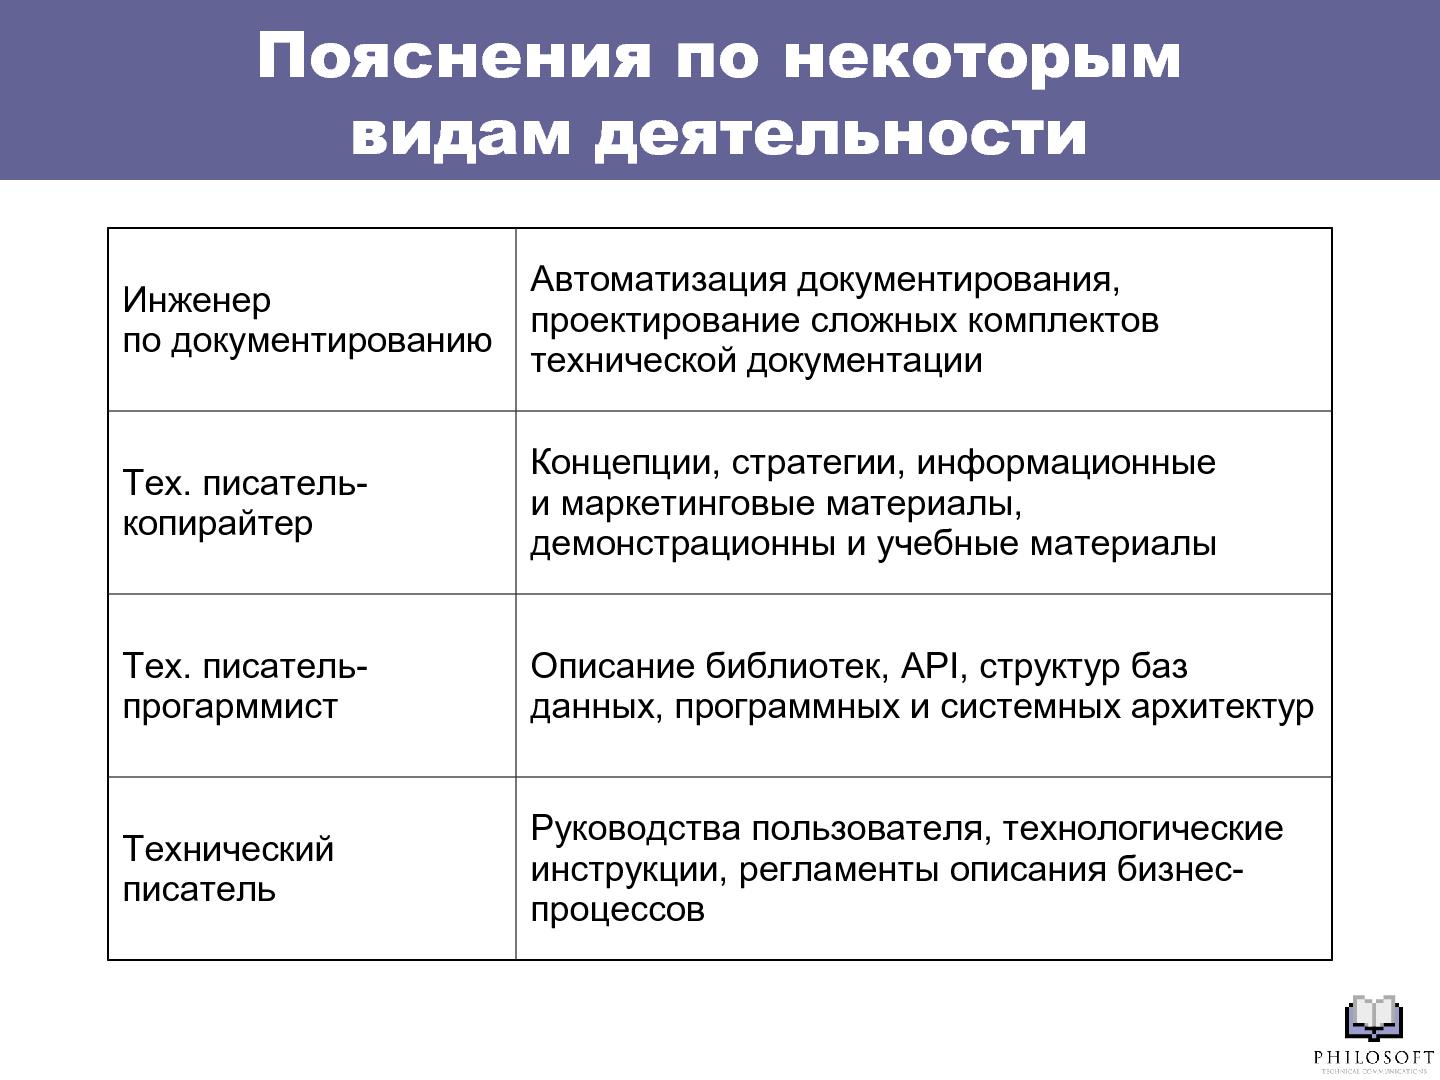 Файл:Профессиональный стандарт «Технический писатель» (Михаил Острогорский, SECR-2012).pdf